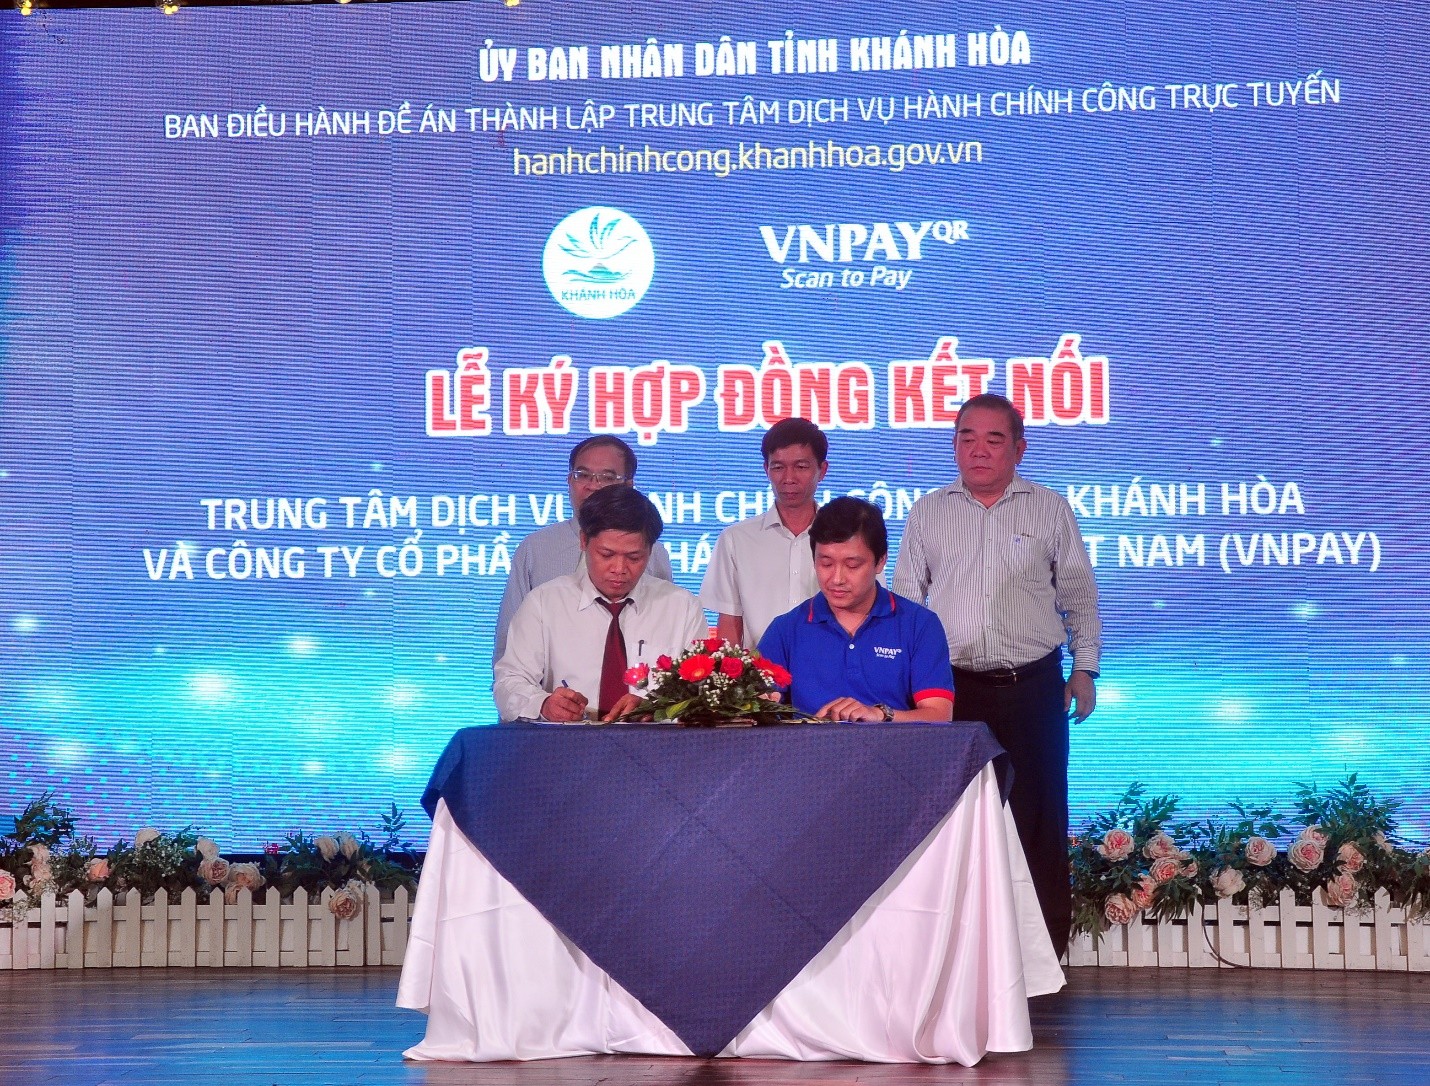 Trung Tâm Dịch Vụ Hành Chính Công Trực Tuyến Tỉnh Khánh Hòa  và Công Ty Cổ Phần Giải Pháp Thanh Toán Việt Nam (VNPAY) ký kết hợp đồng